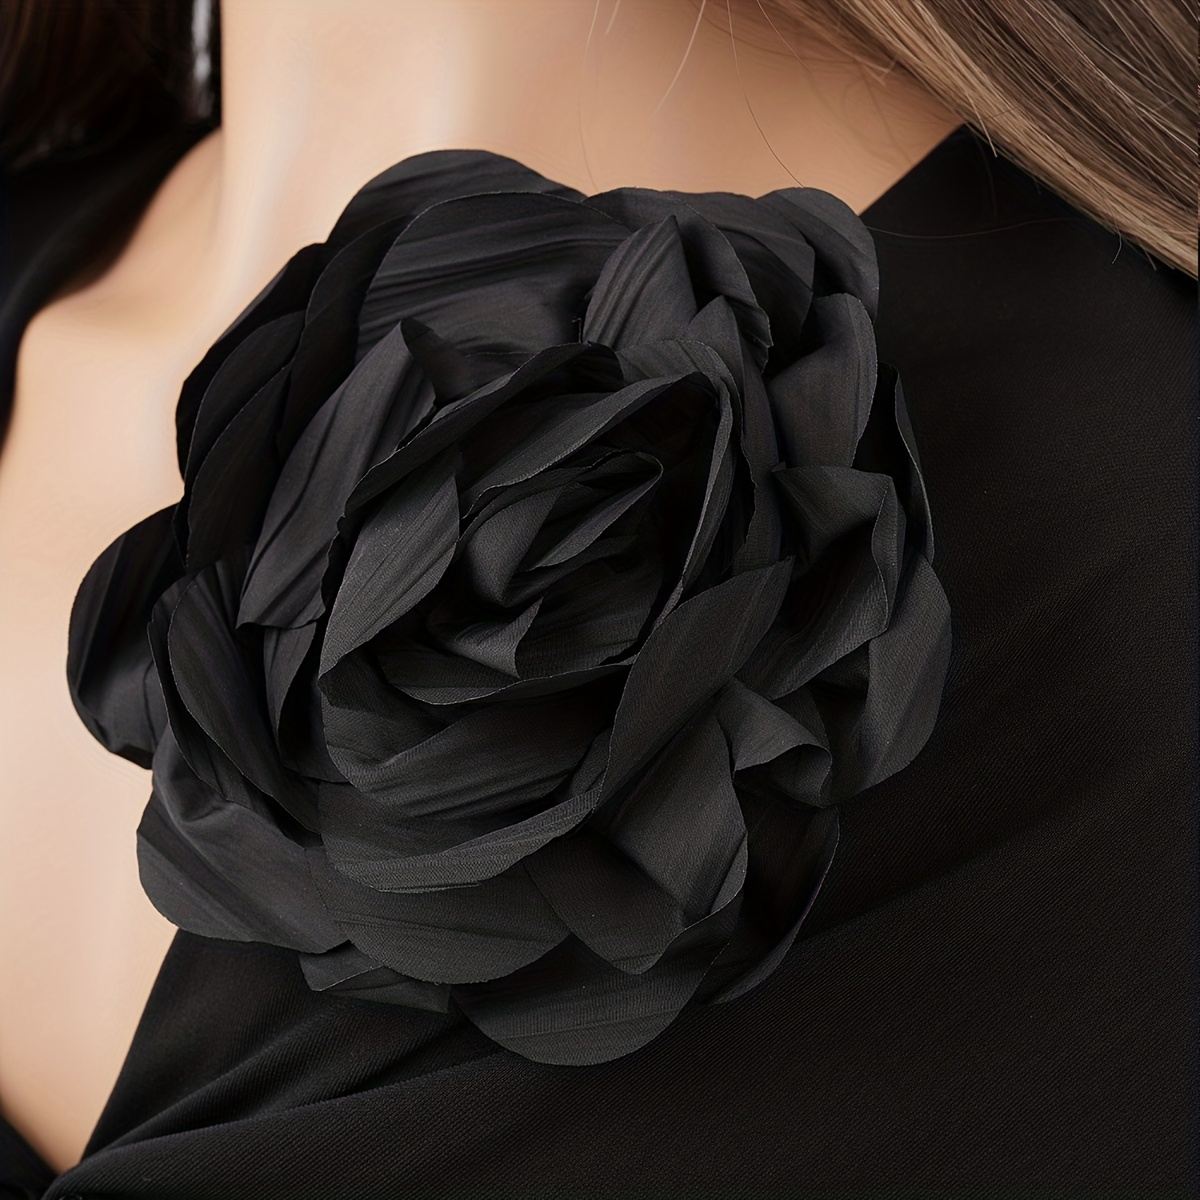 Flor para ropa negra